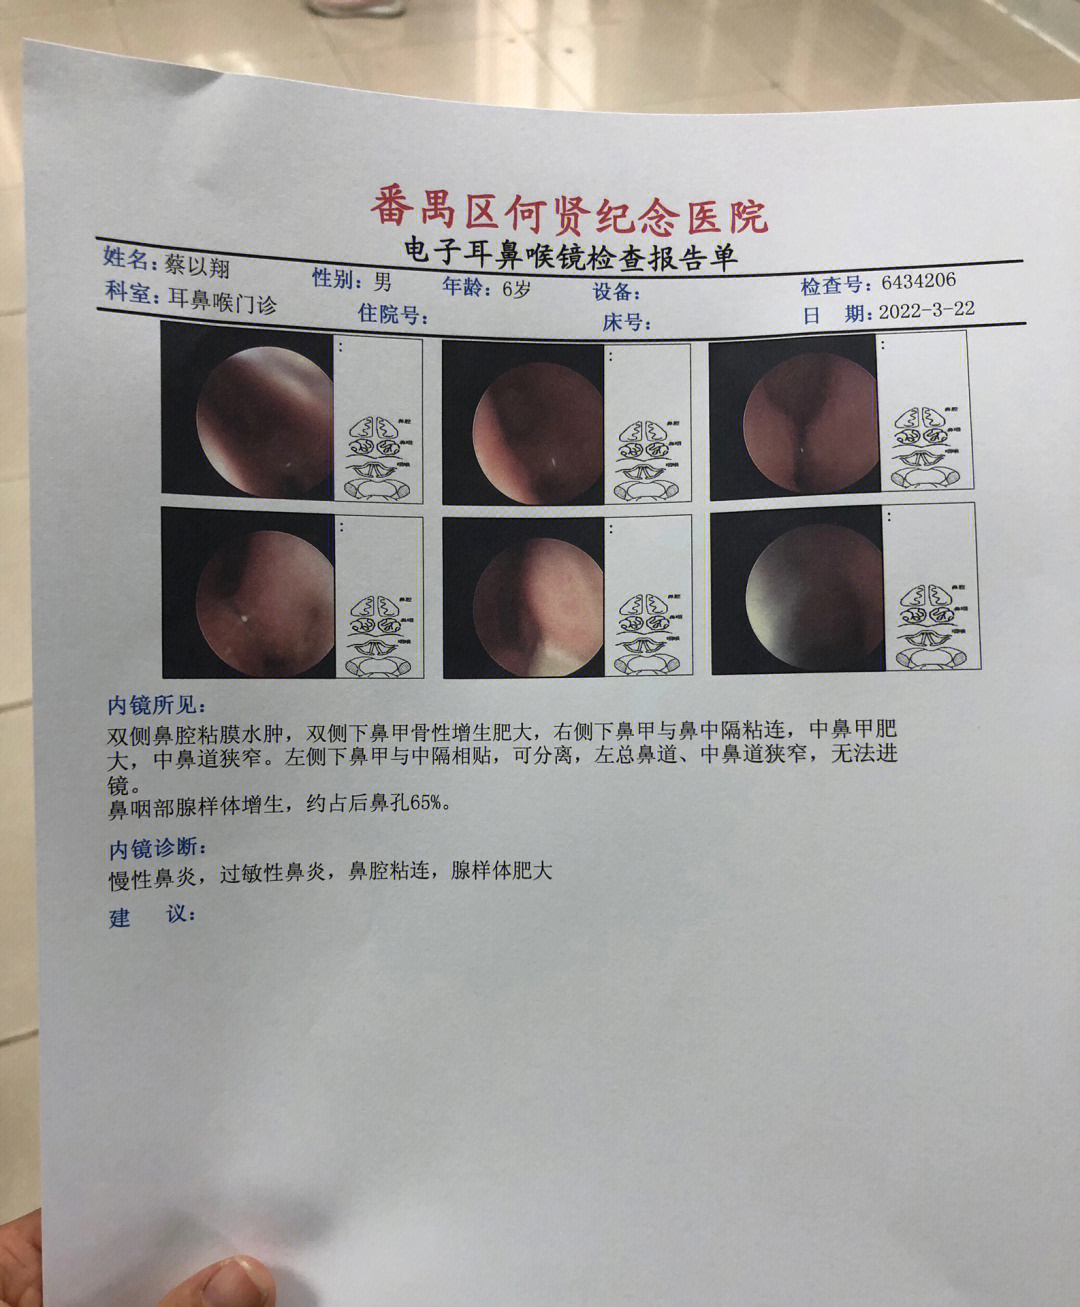 腺样体手术费用图片